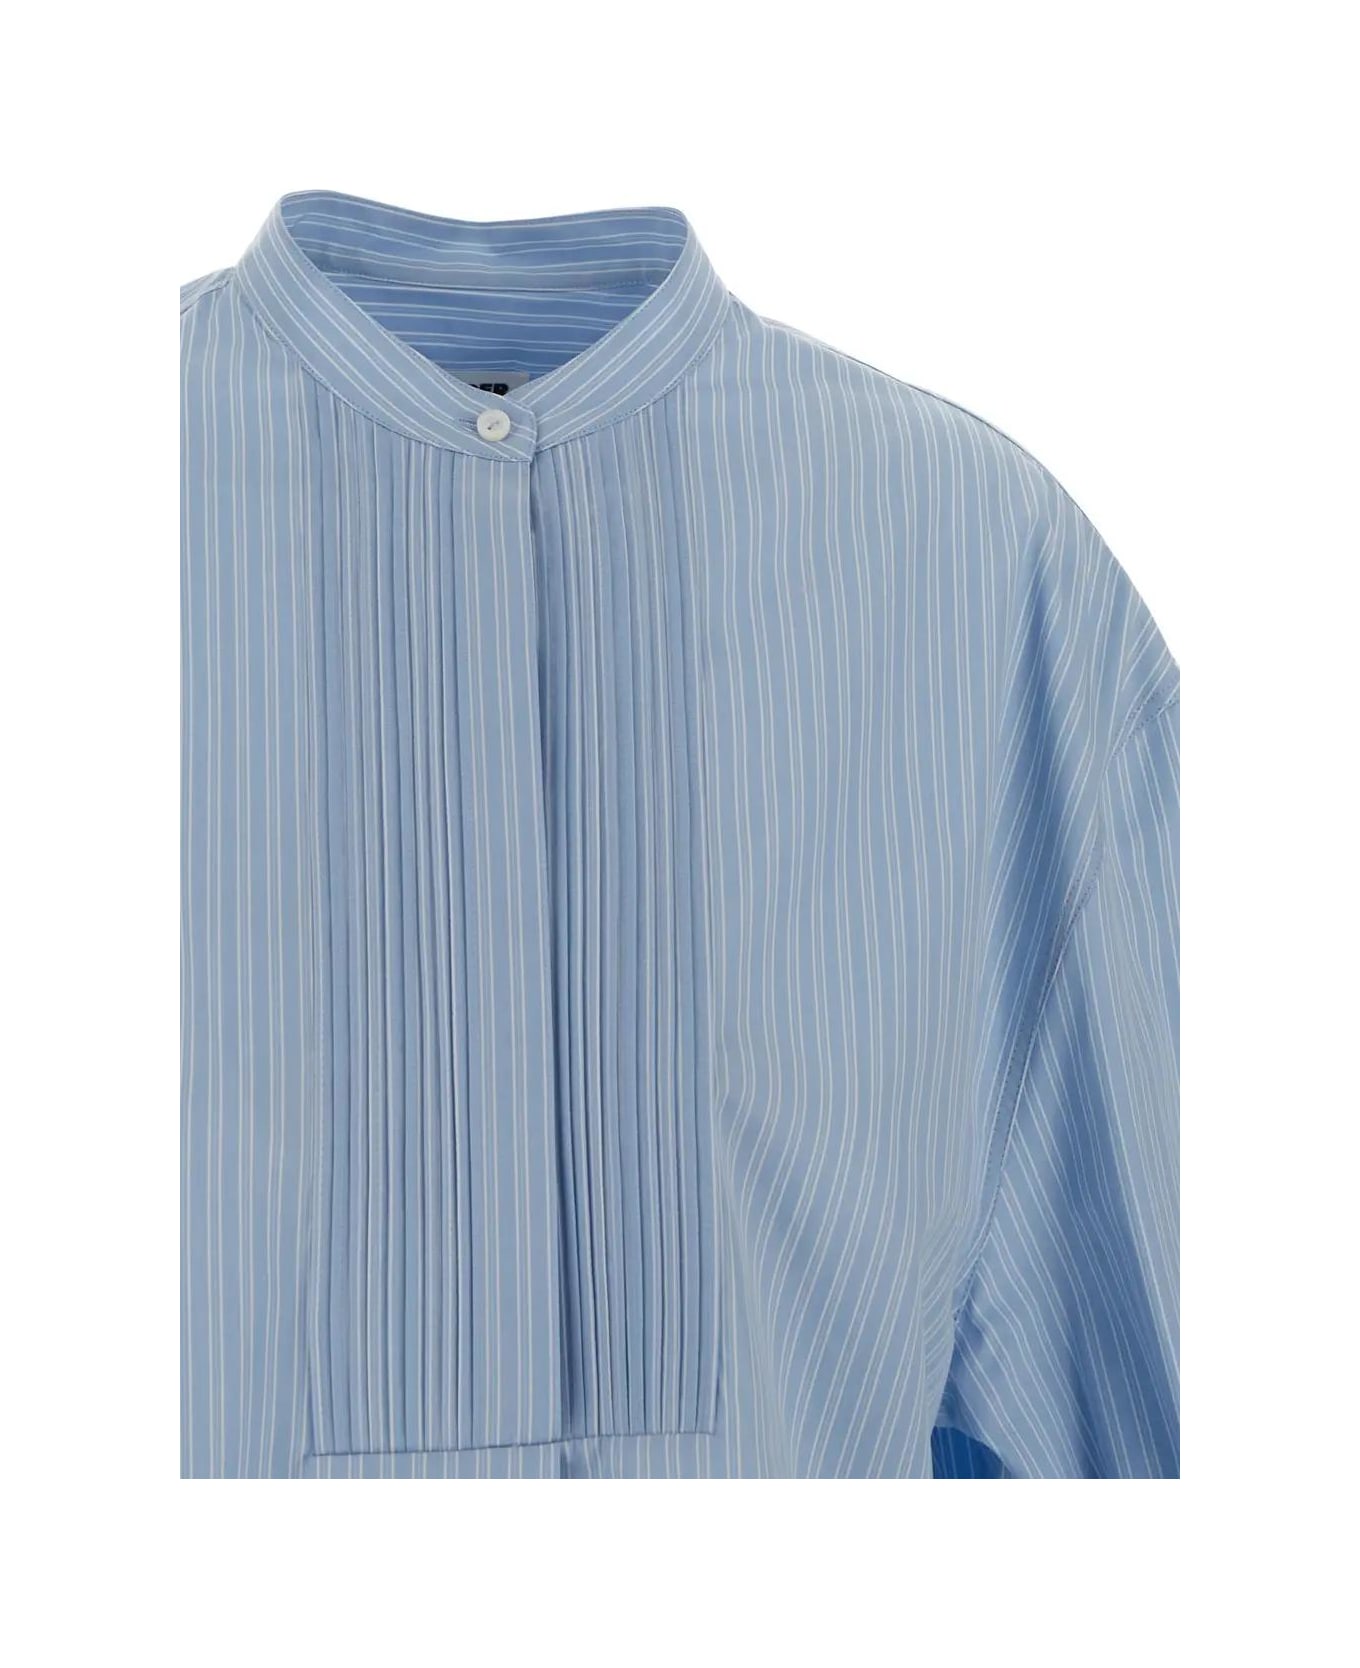 Jil Sander Triple Stripe On Cotton Shirt シャツ